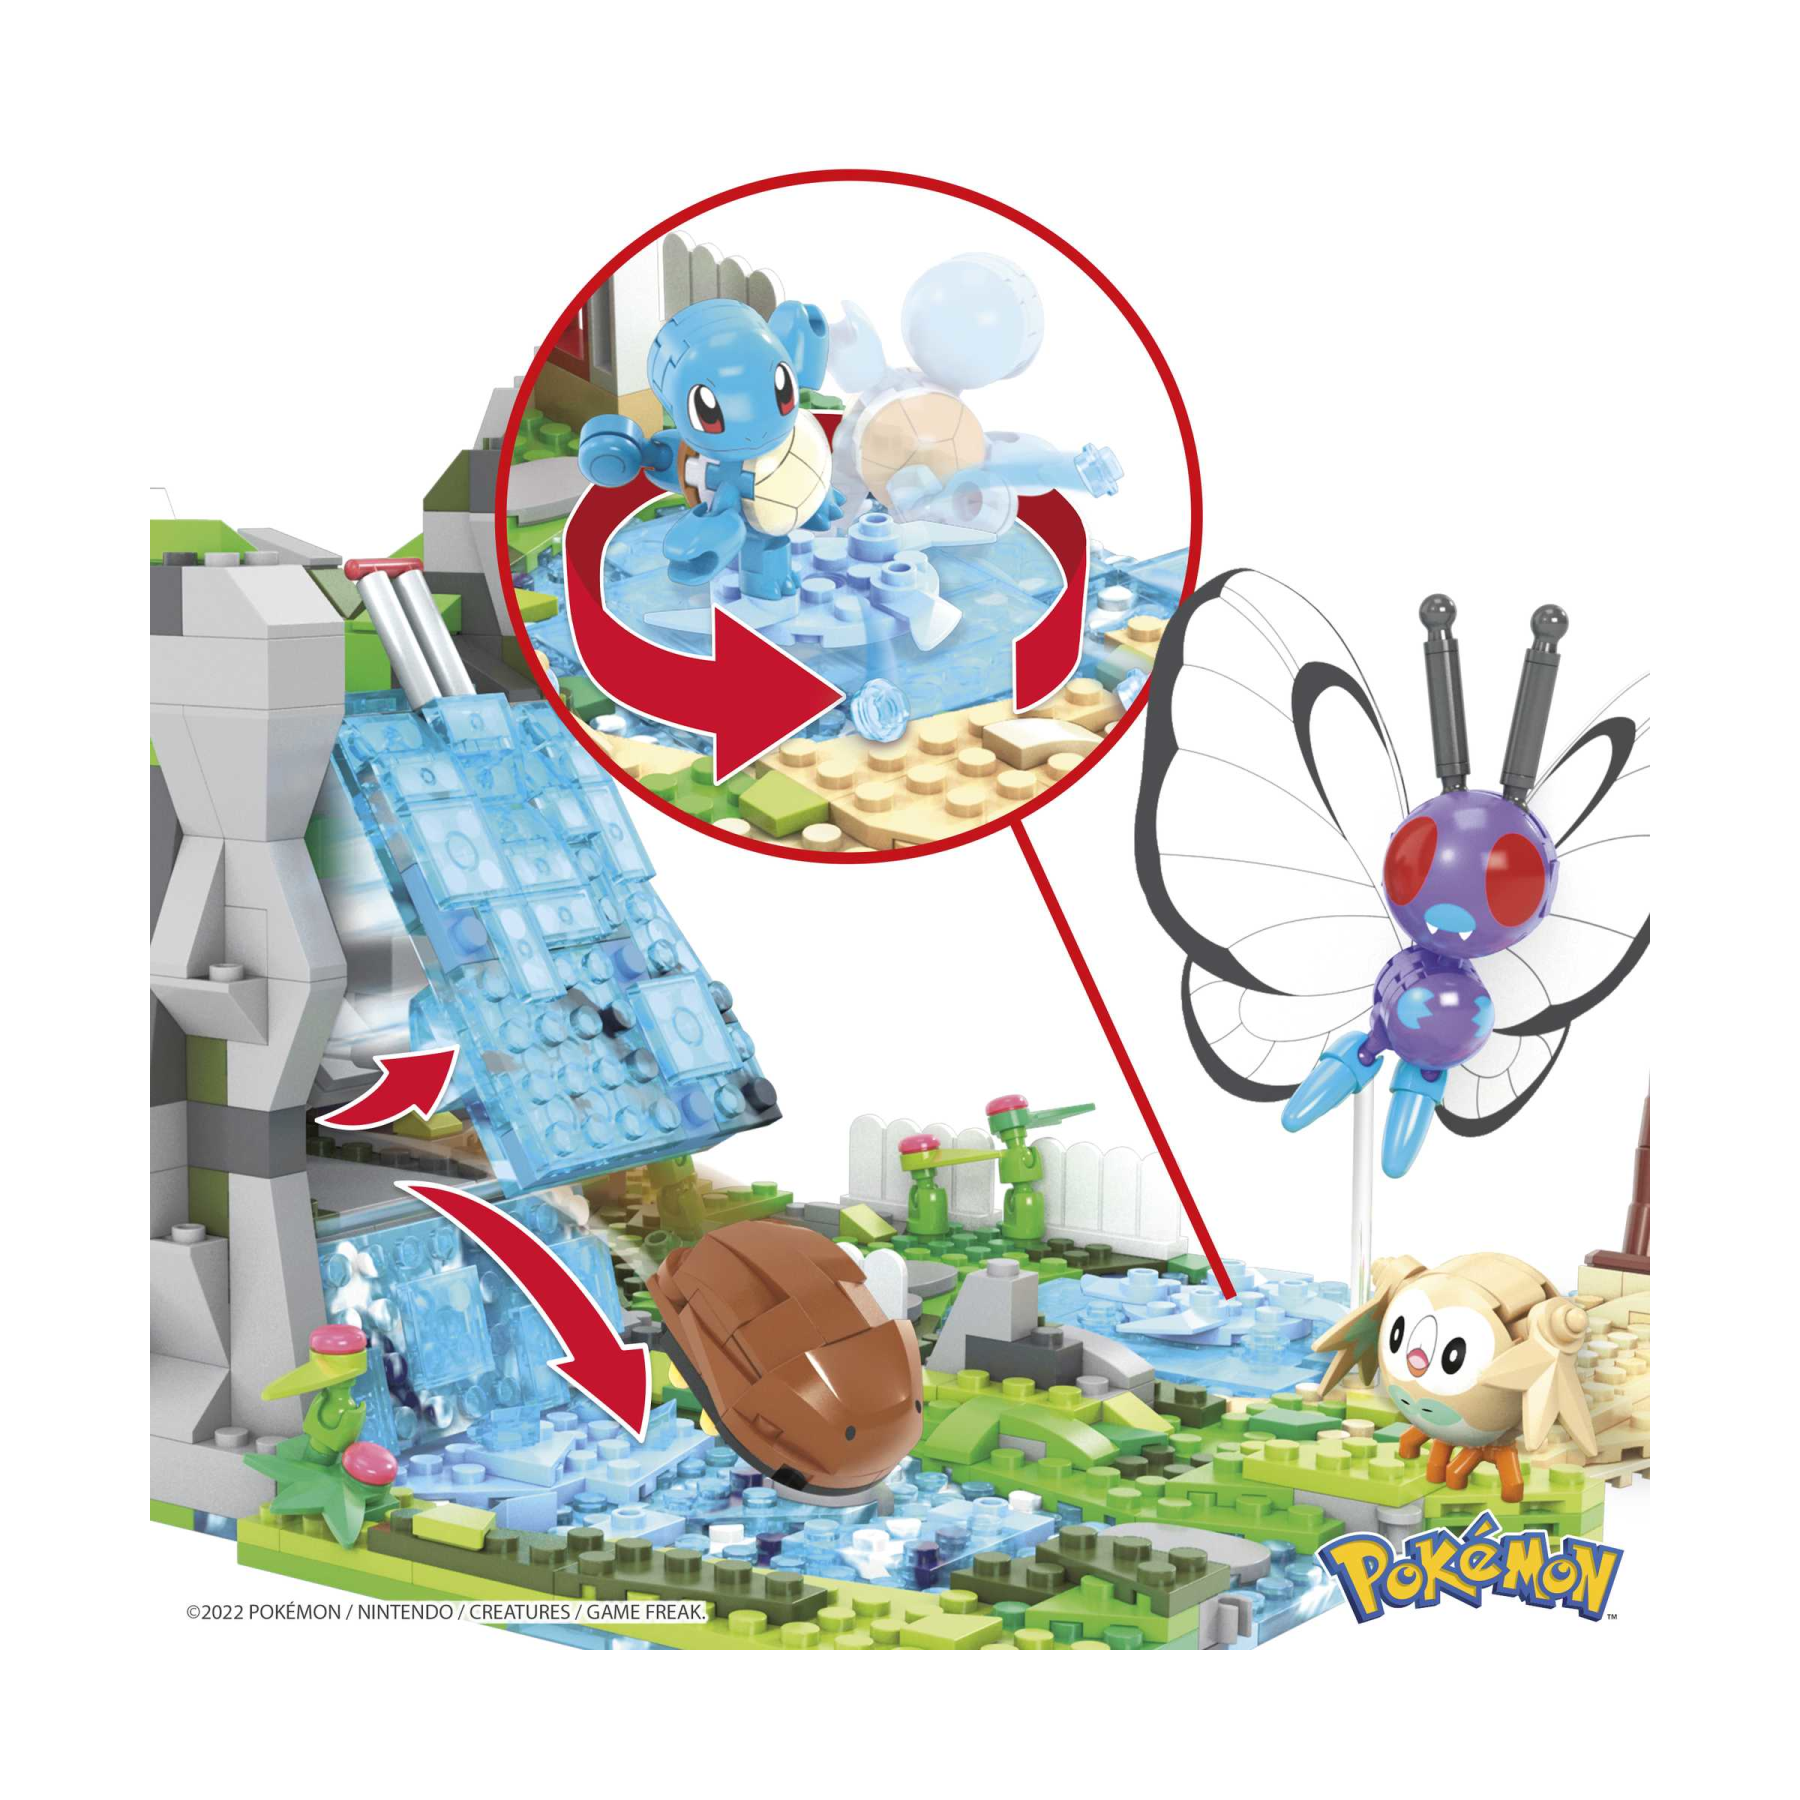 Mega pokémon spedizione nella giungla set di costruzioni con 1347 mattoncini e pezzi compatibili per collegarlo ad altri mondi, set regalo per bambini dai 9 anni in su - 